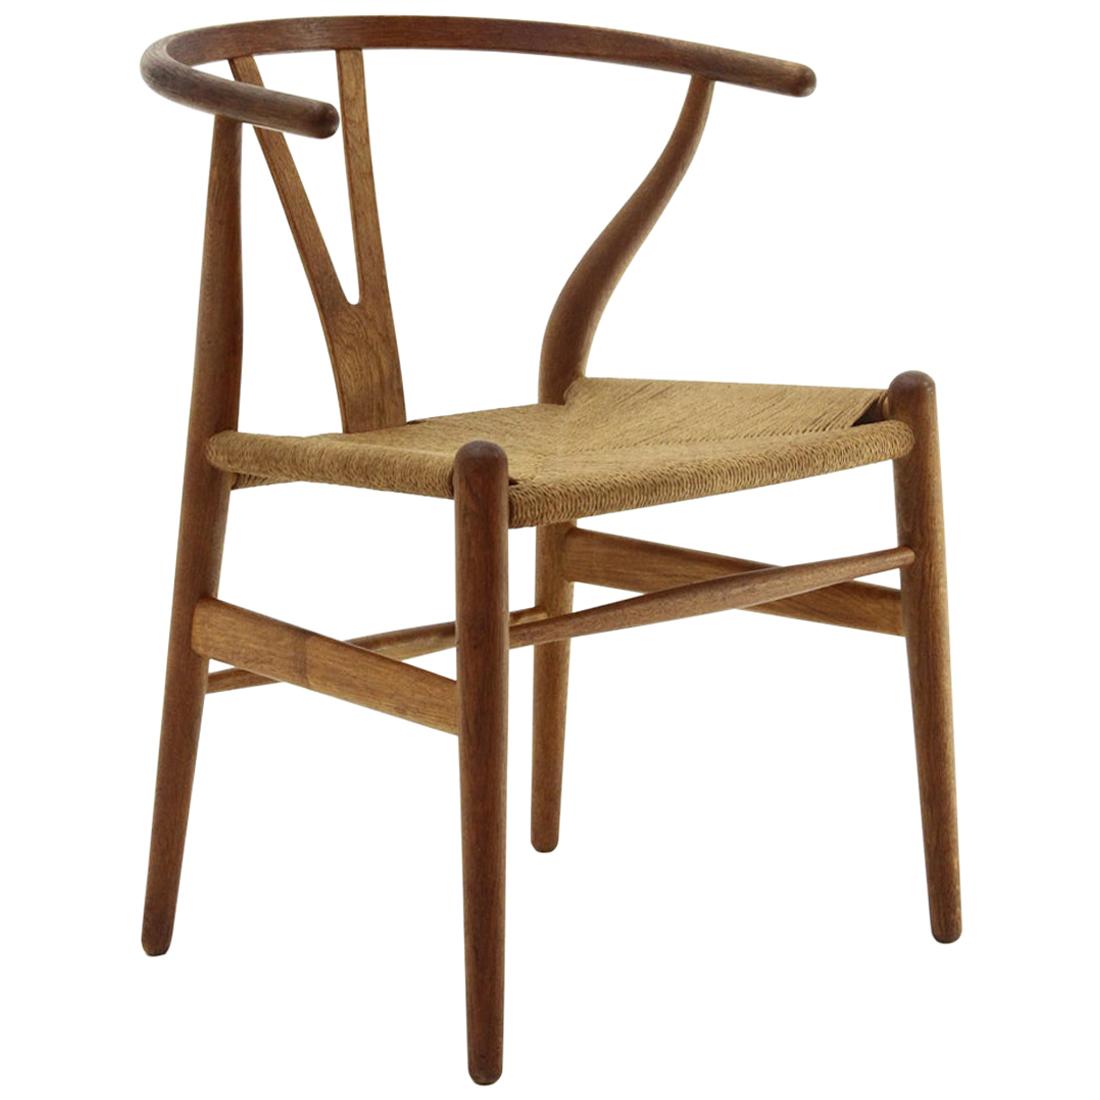 ‘Wishbone’ Chair in Durmast by Hans Wegner for Carl Hansen & Søn, 1960s